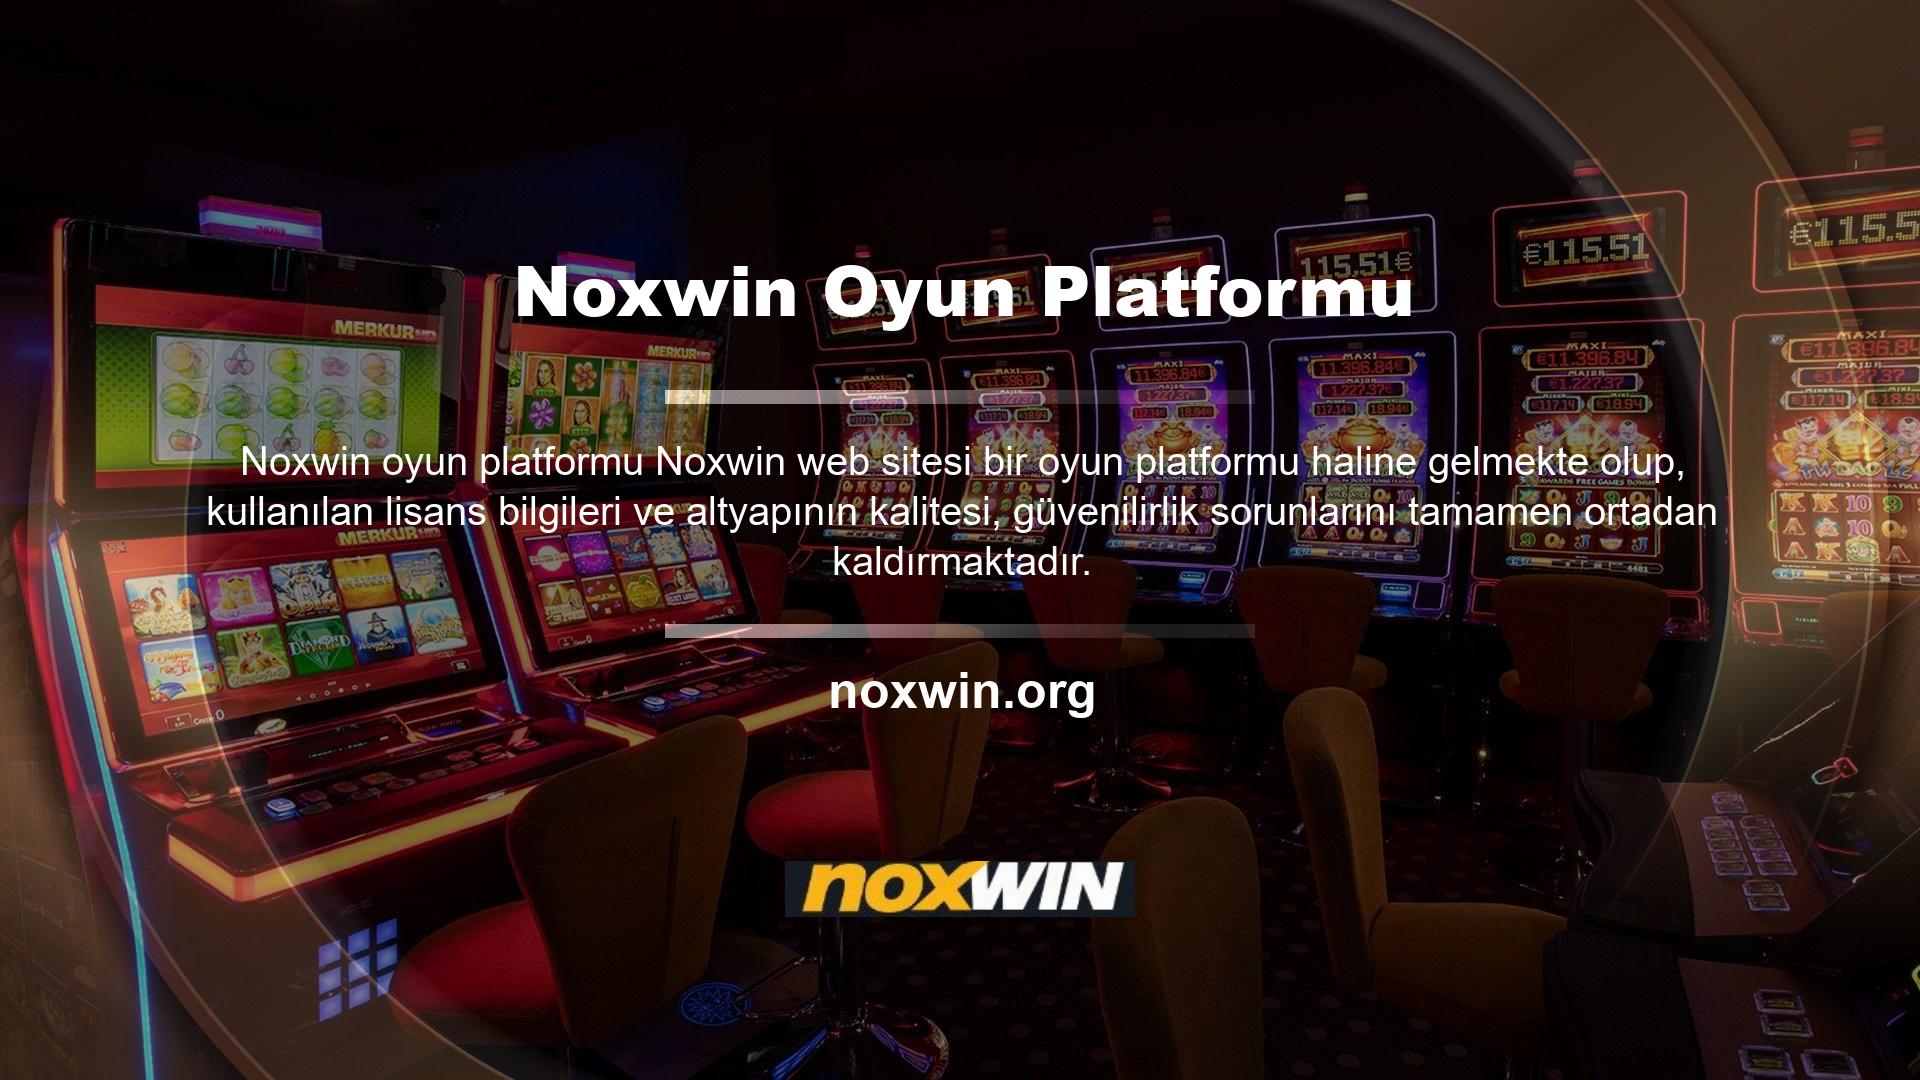 Bu nedenler netleşince Noxwin sadece büyük şirketlerin kurucusu değil, aynı zamanda tercih edilen web sitesi olmaya başladı